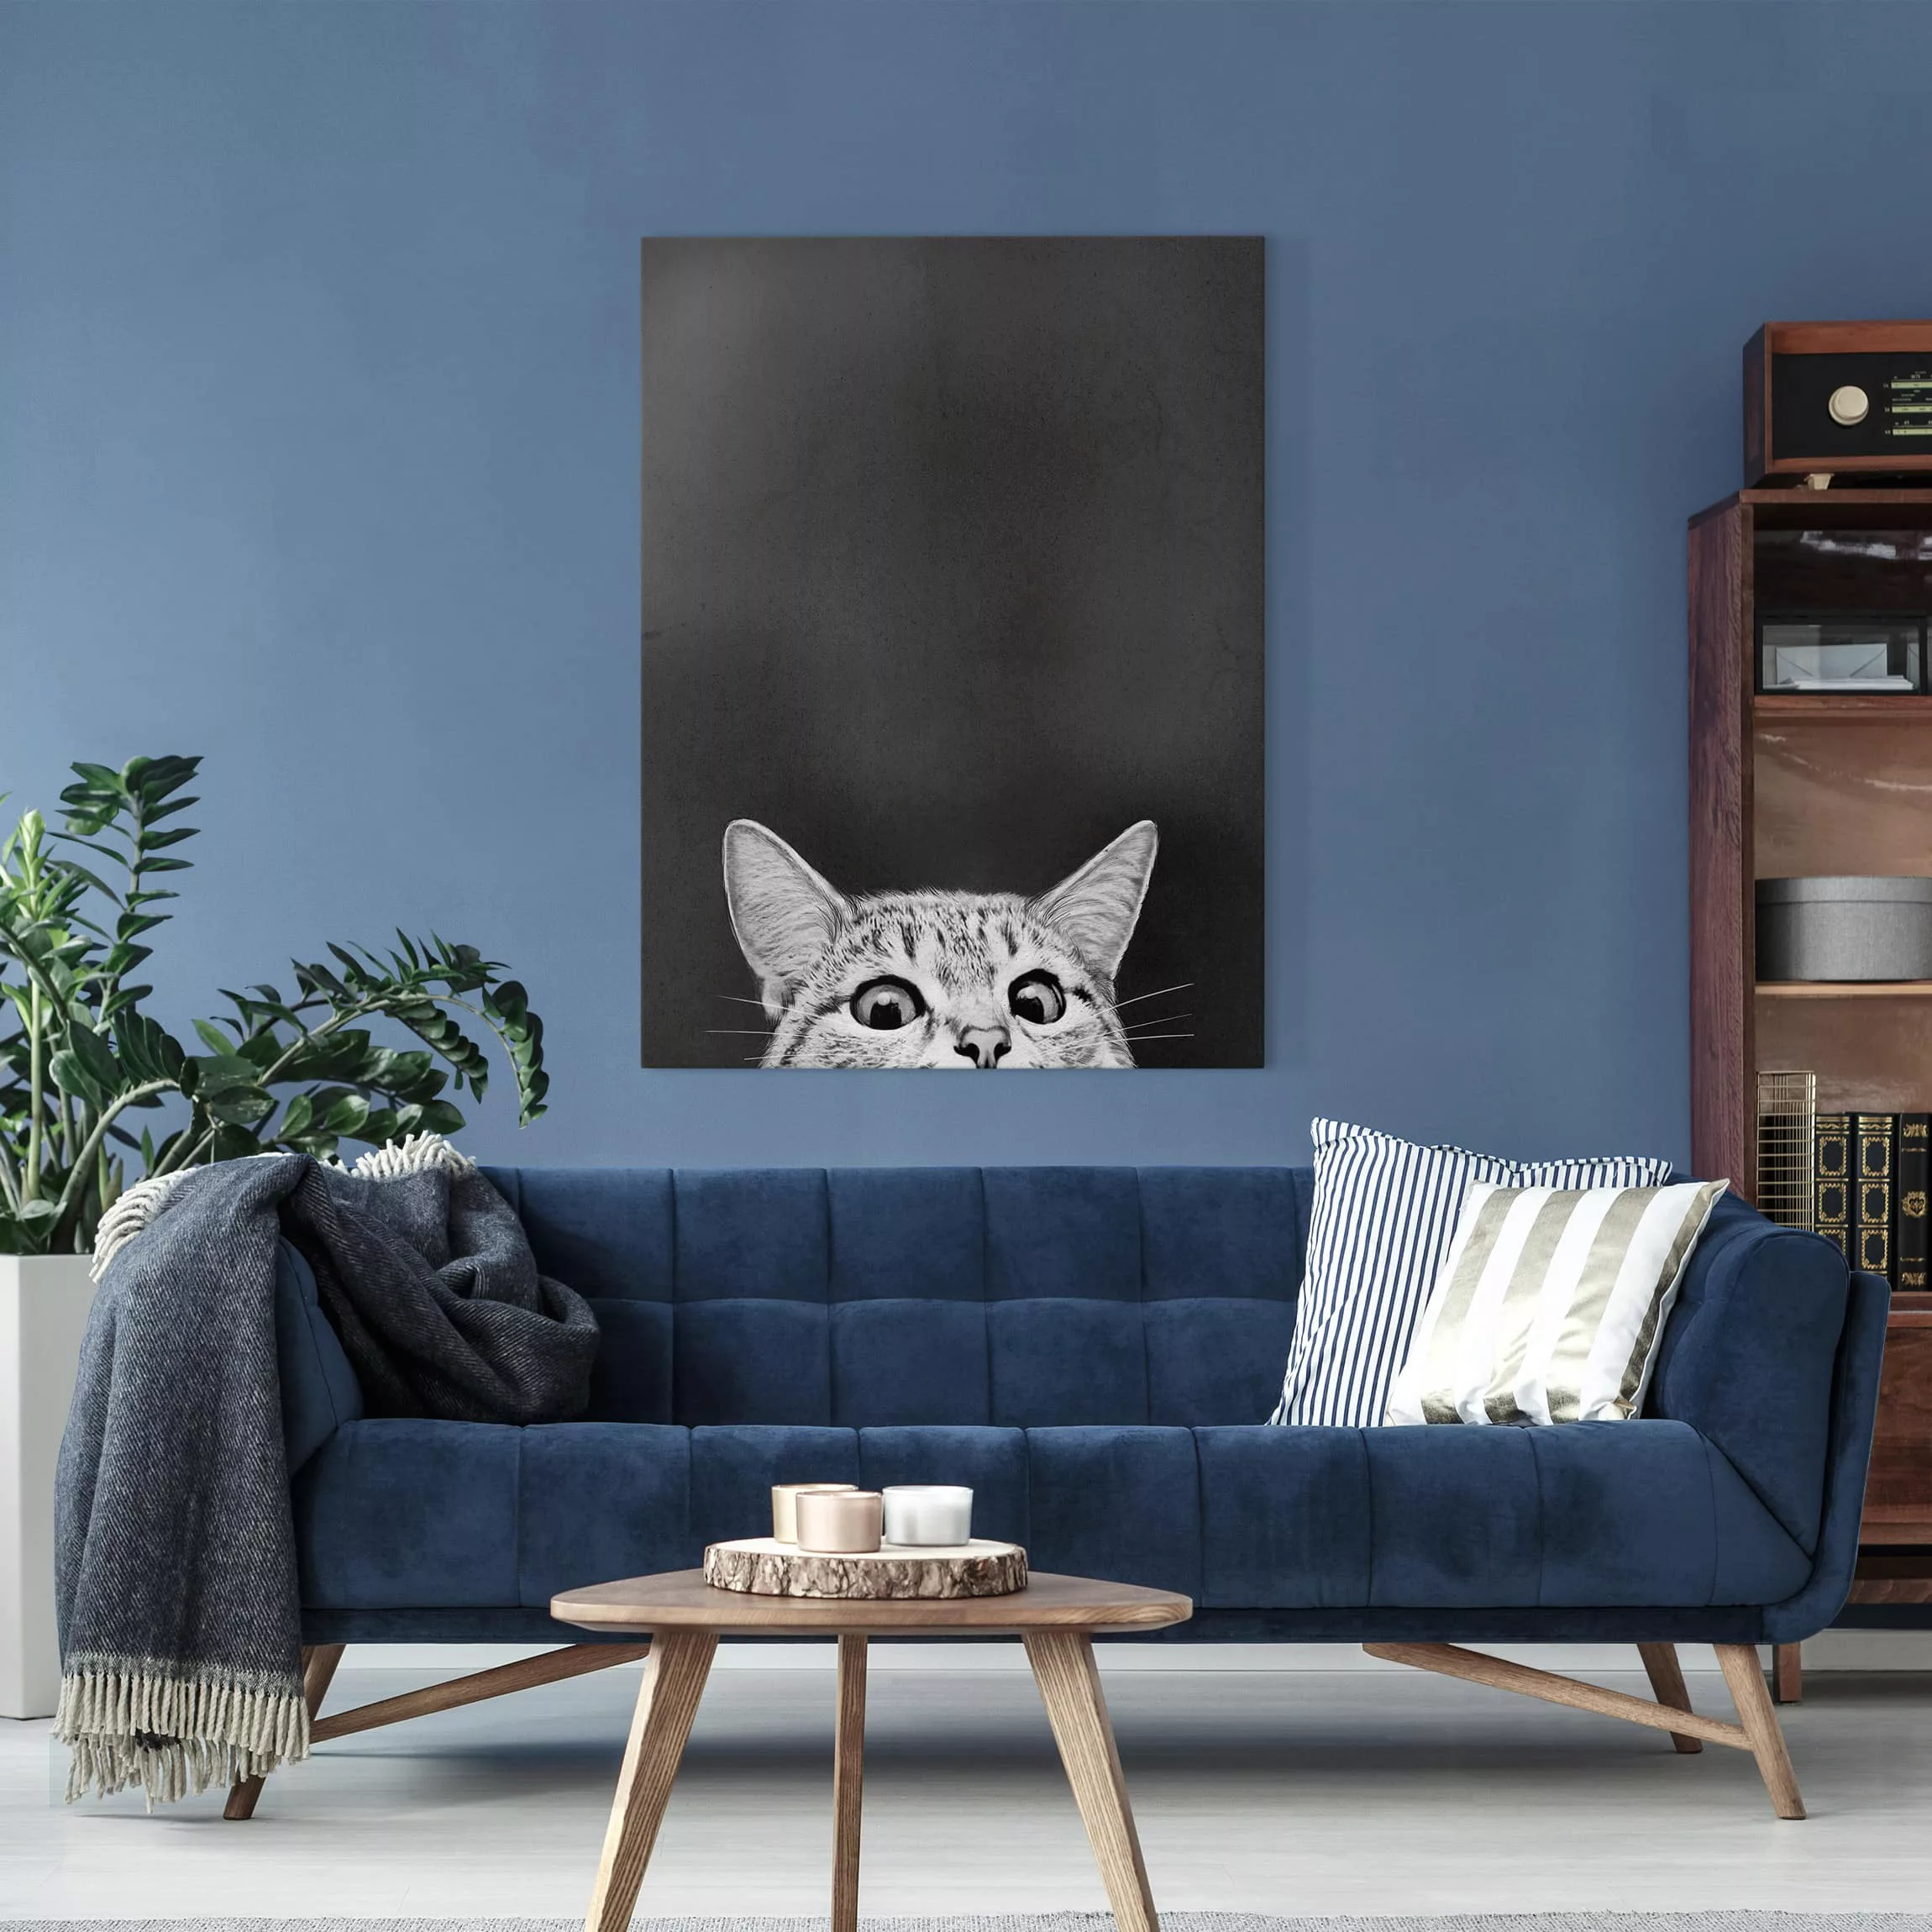 Leinwandbild Tiere - Hochformat Illustration Katze Schwarz Weiß Zeichnung günstig online kaufen